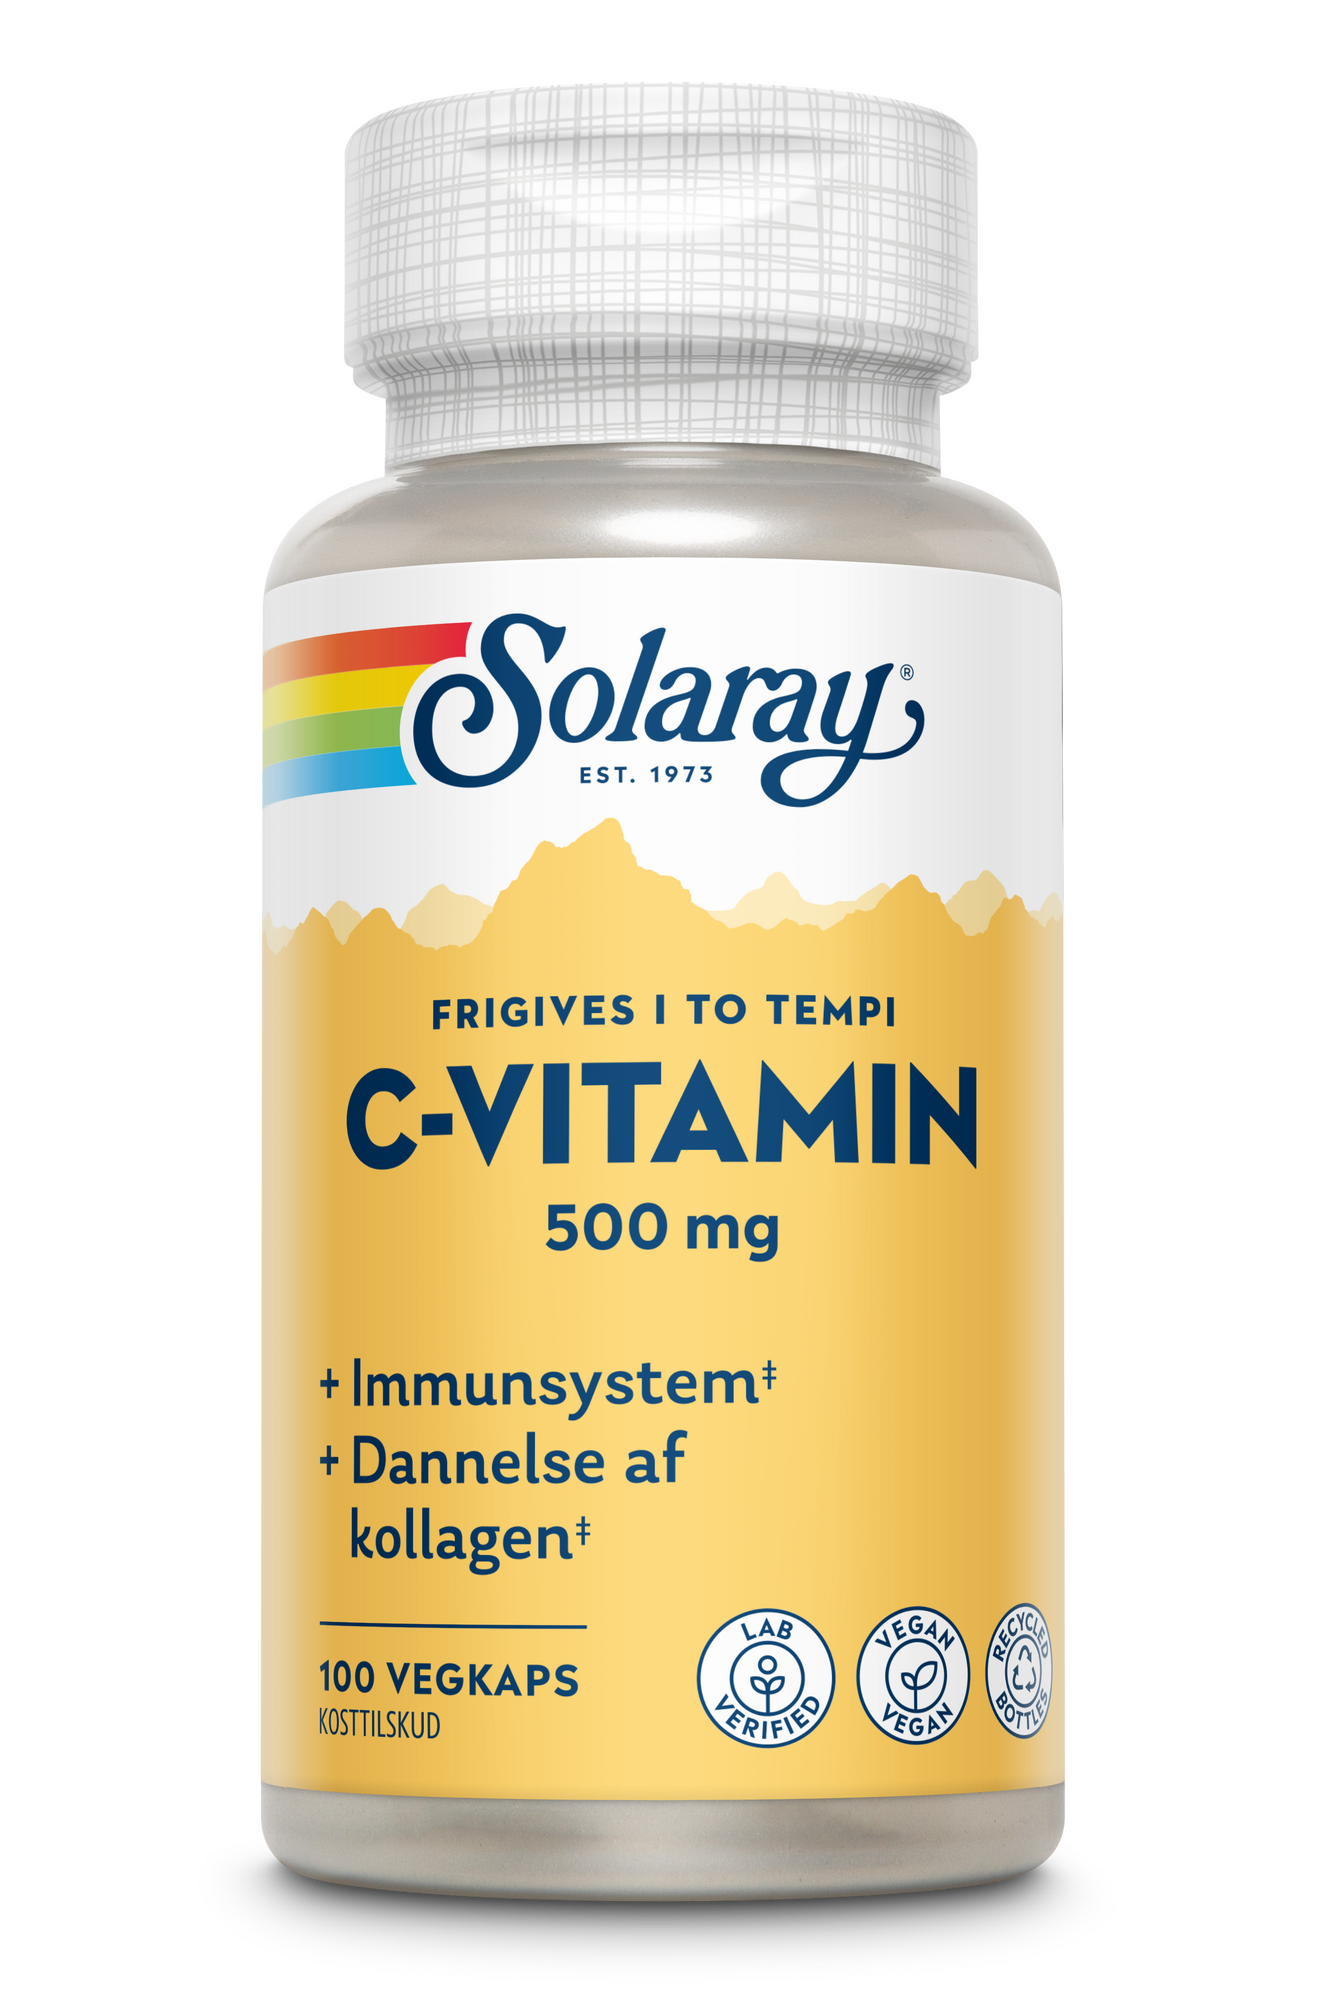 Billede af Solaray C-vitamin 500 mg - 100 kapsler hos Duft og Natur